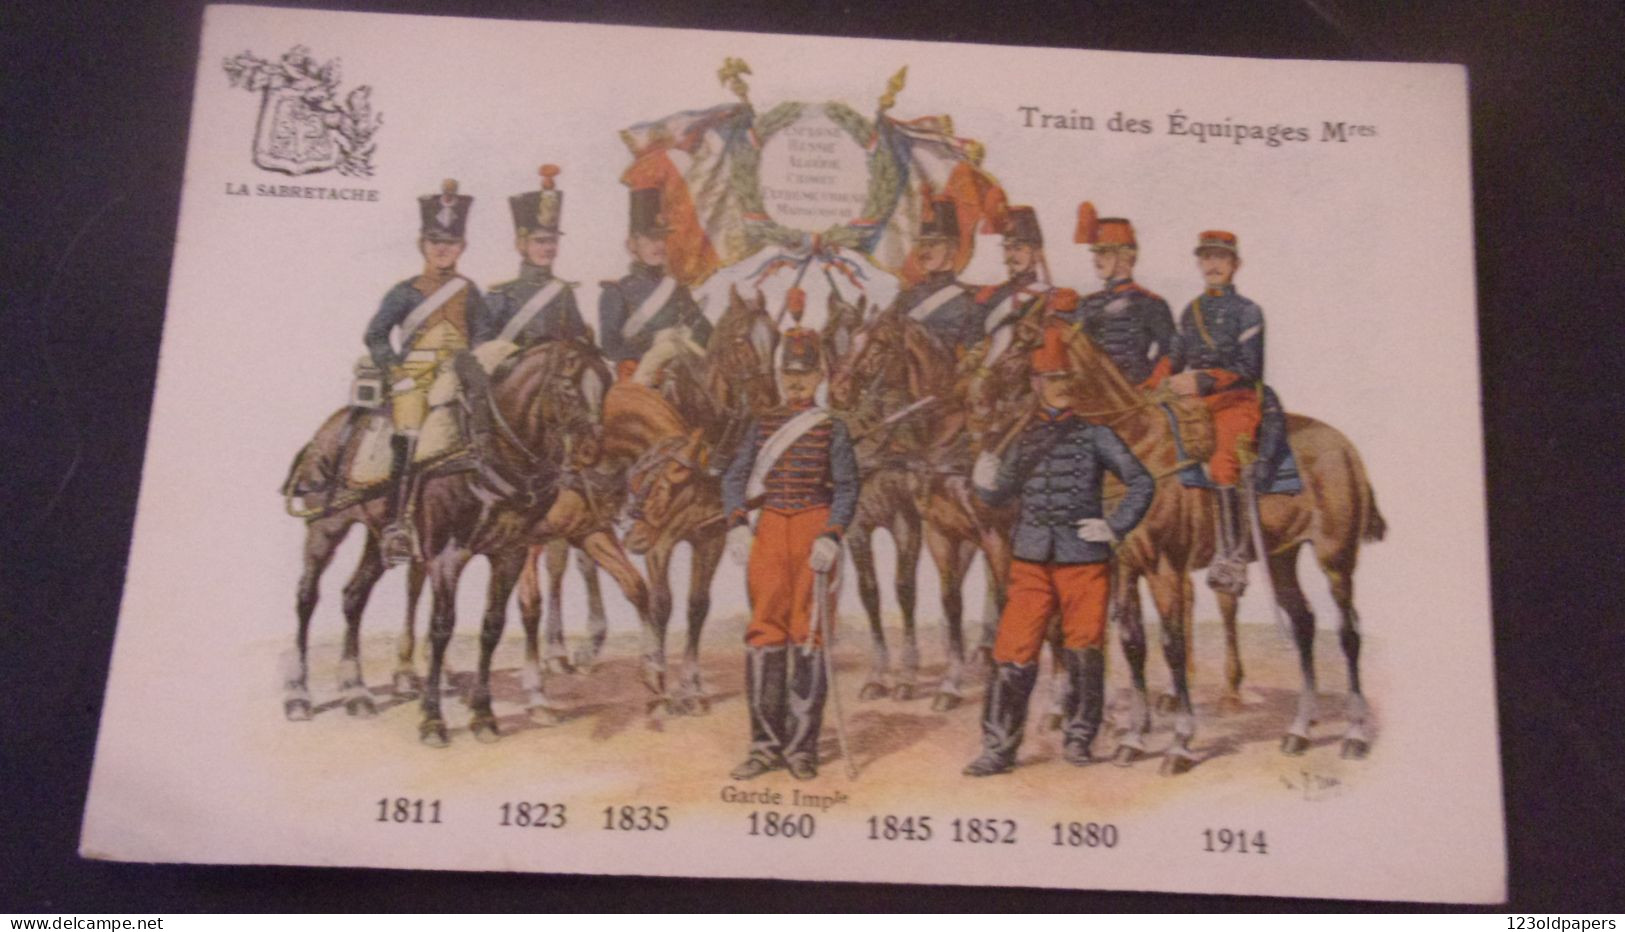 SABRETACHE  UNIFORME TENUE MILITAIRE TRAIN DES EQUIPAGES 1811 1914 - Regiments